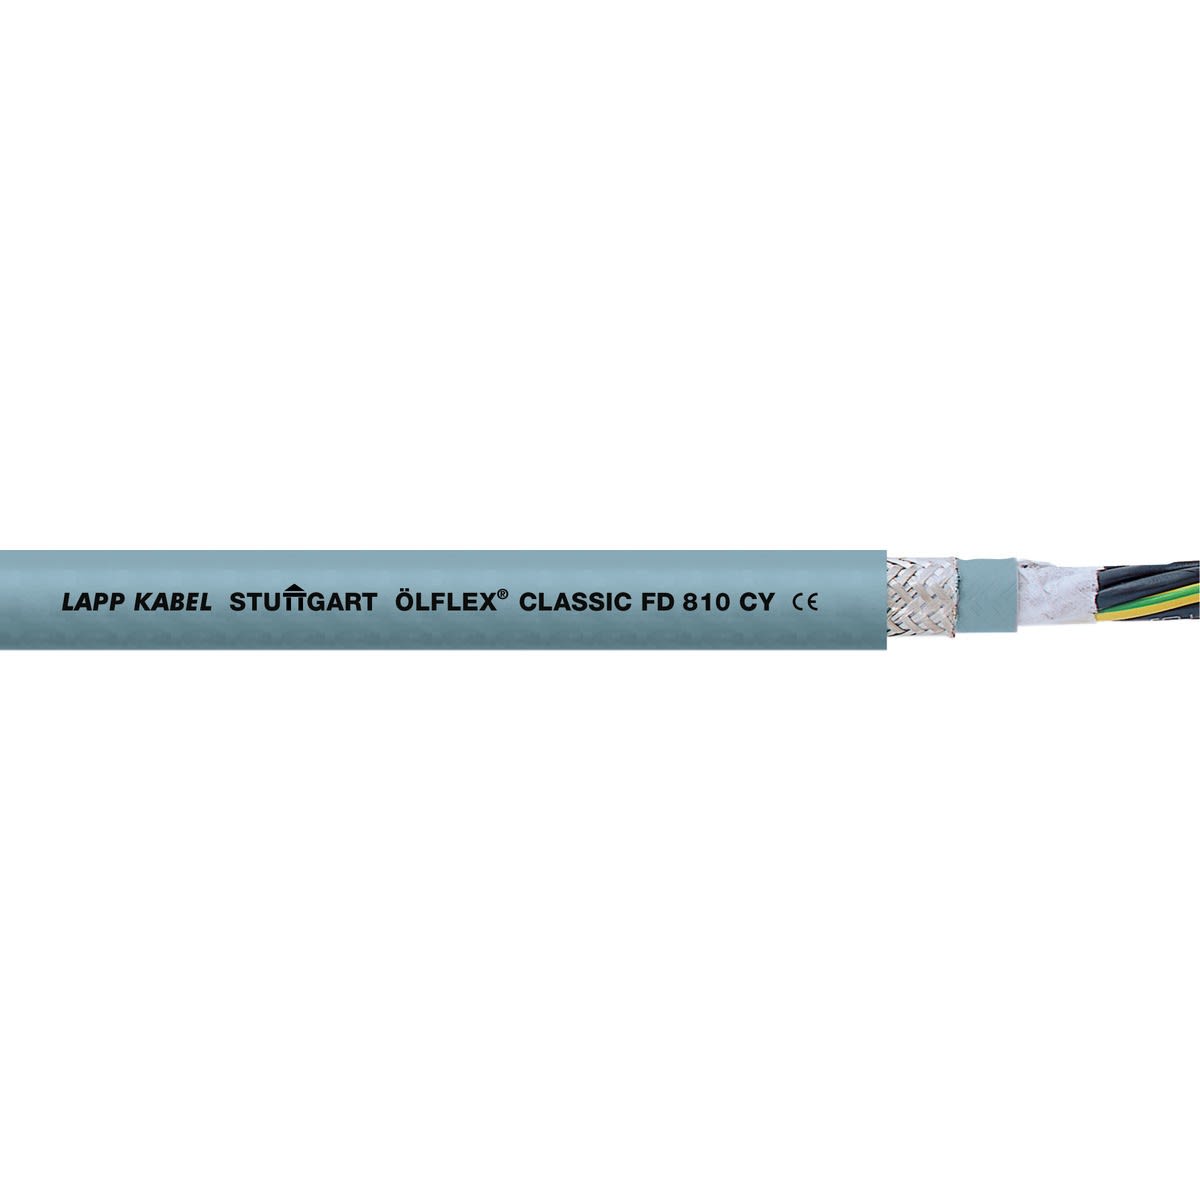 Lapp - ÖLFLEX CLASSIC FD 810 CY 12G1